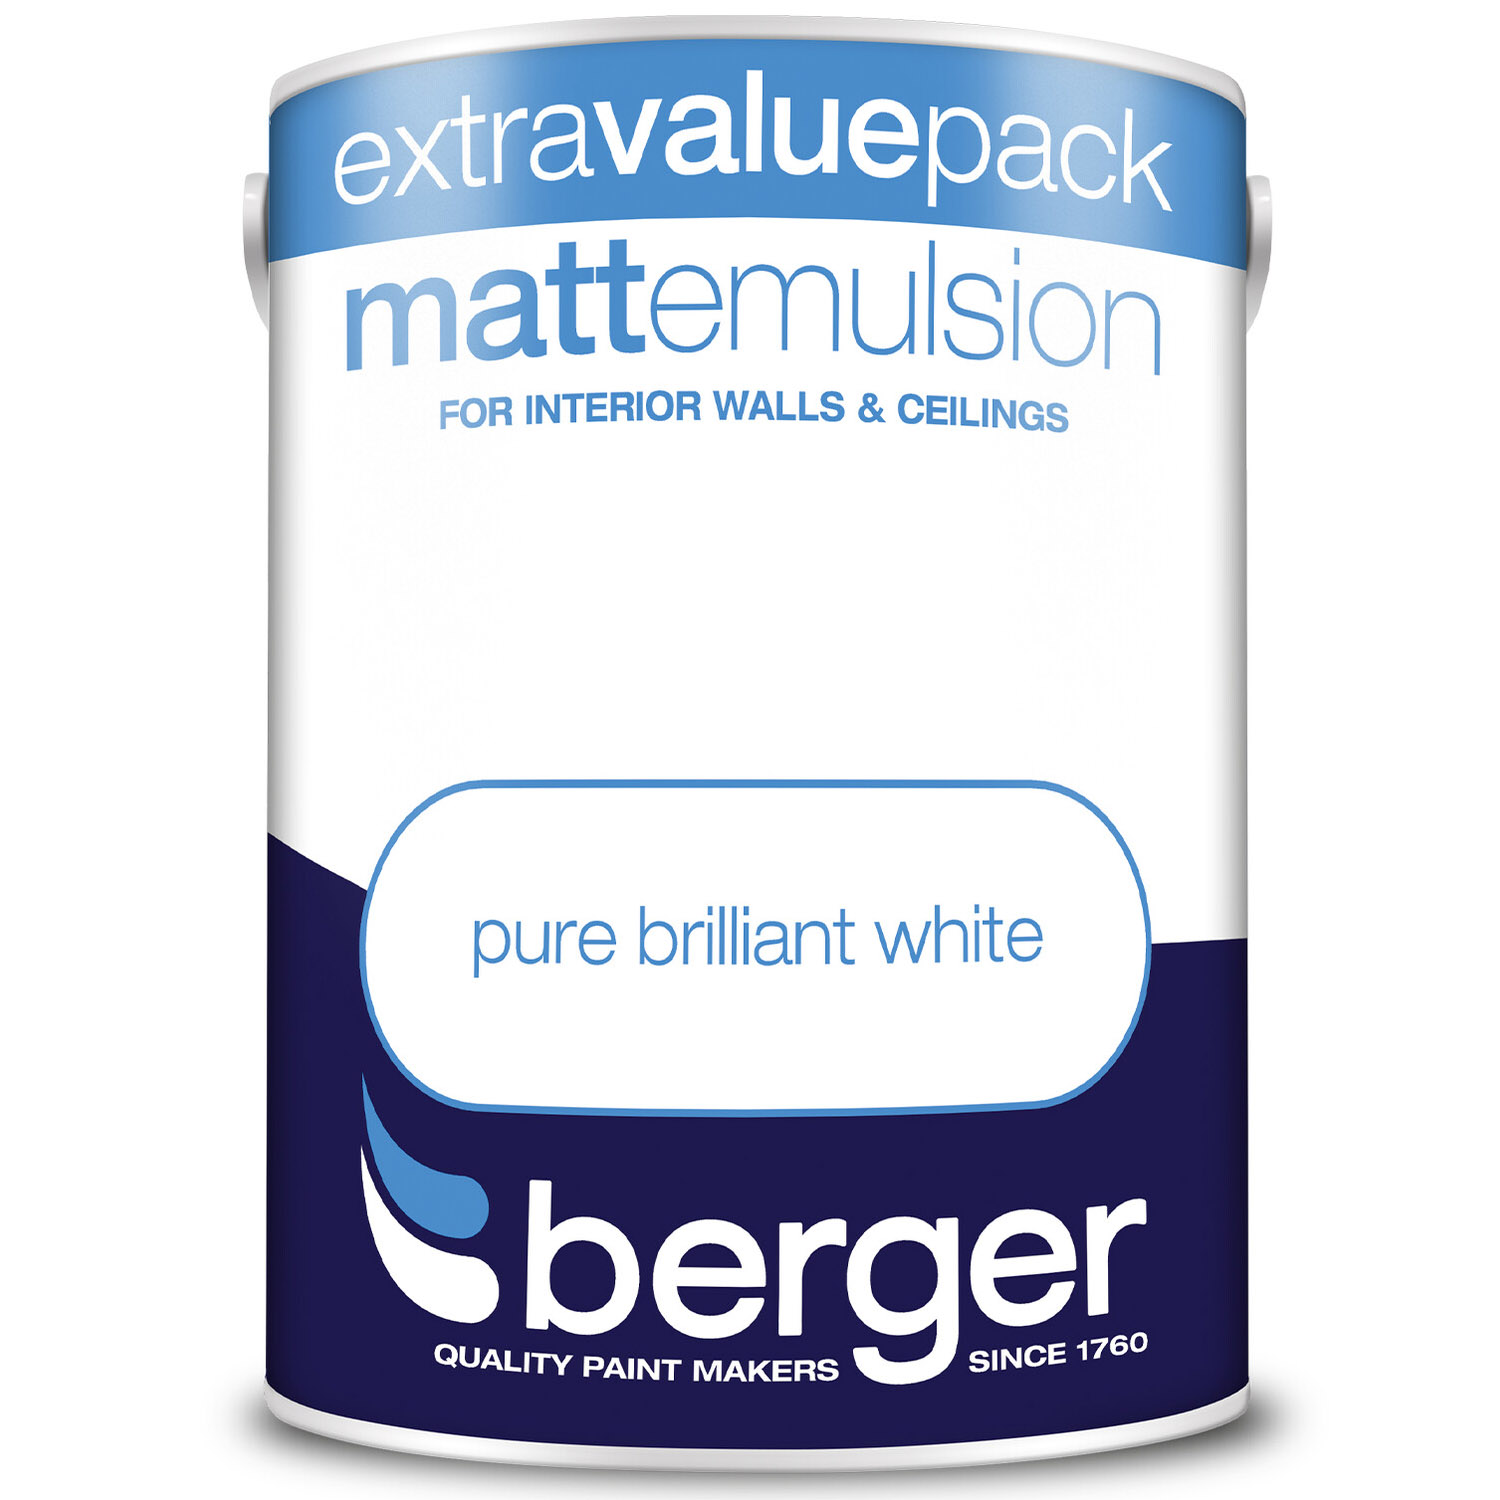 Berger Walls & Ceilings Pure Brilliant White Matt Emulsion Paint 5L Image 2